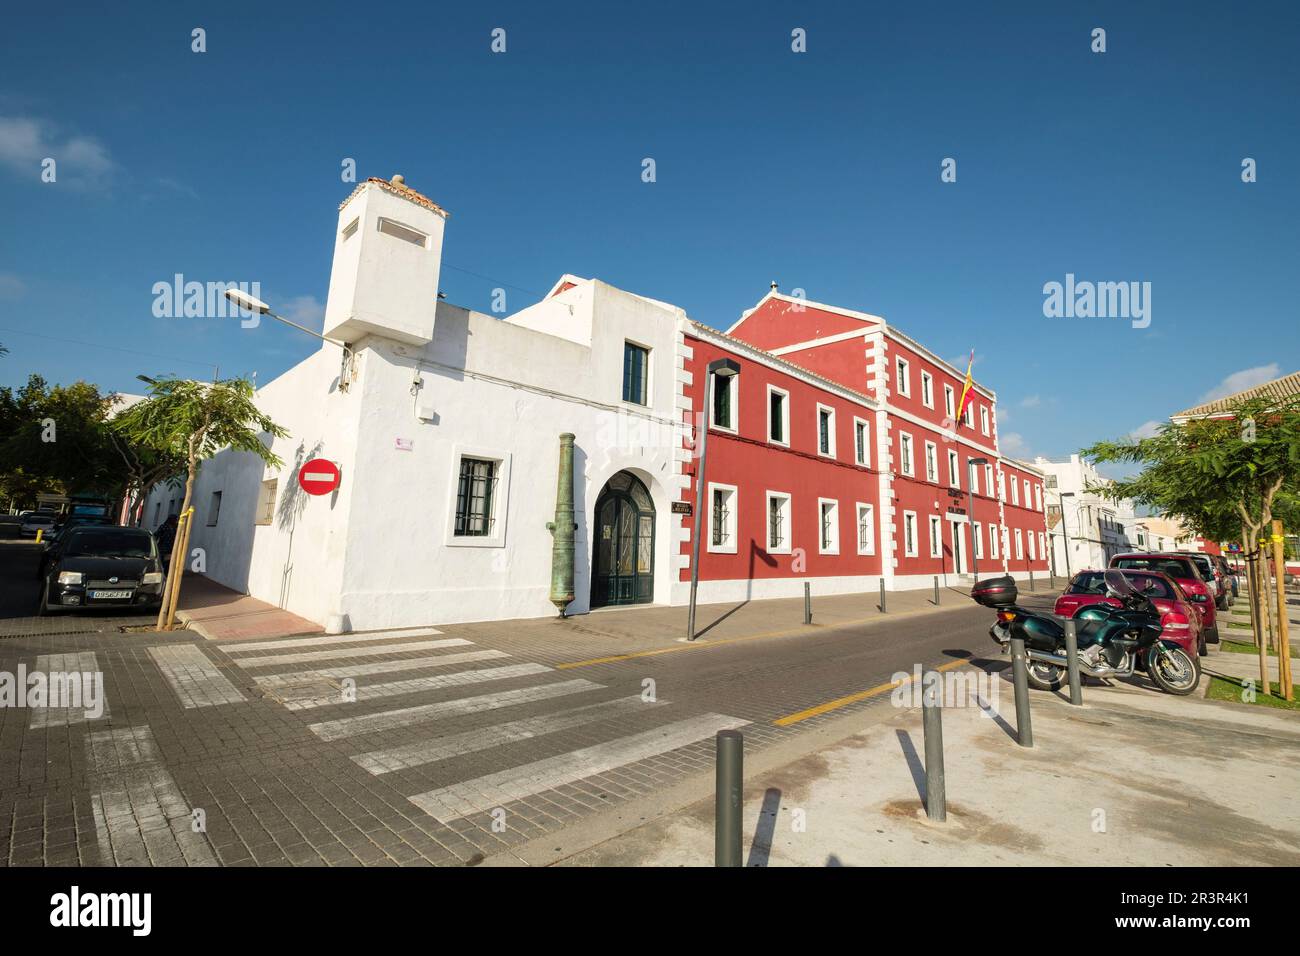 Museo Militar de Menorca, antiguo cuartel de Cala Corb, plaza central de Es Castell, construido por los británicos en 1771, Menorca, balearic islands, Spain. Stock Photo